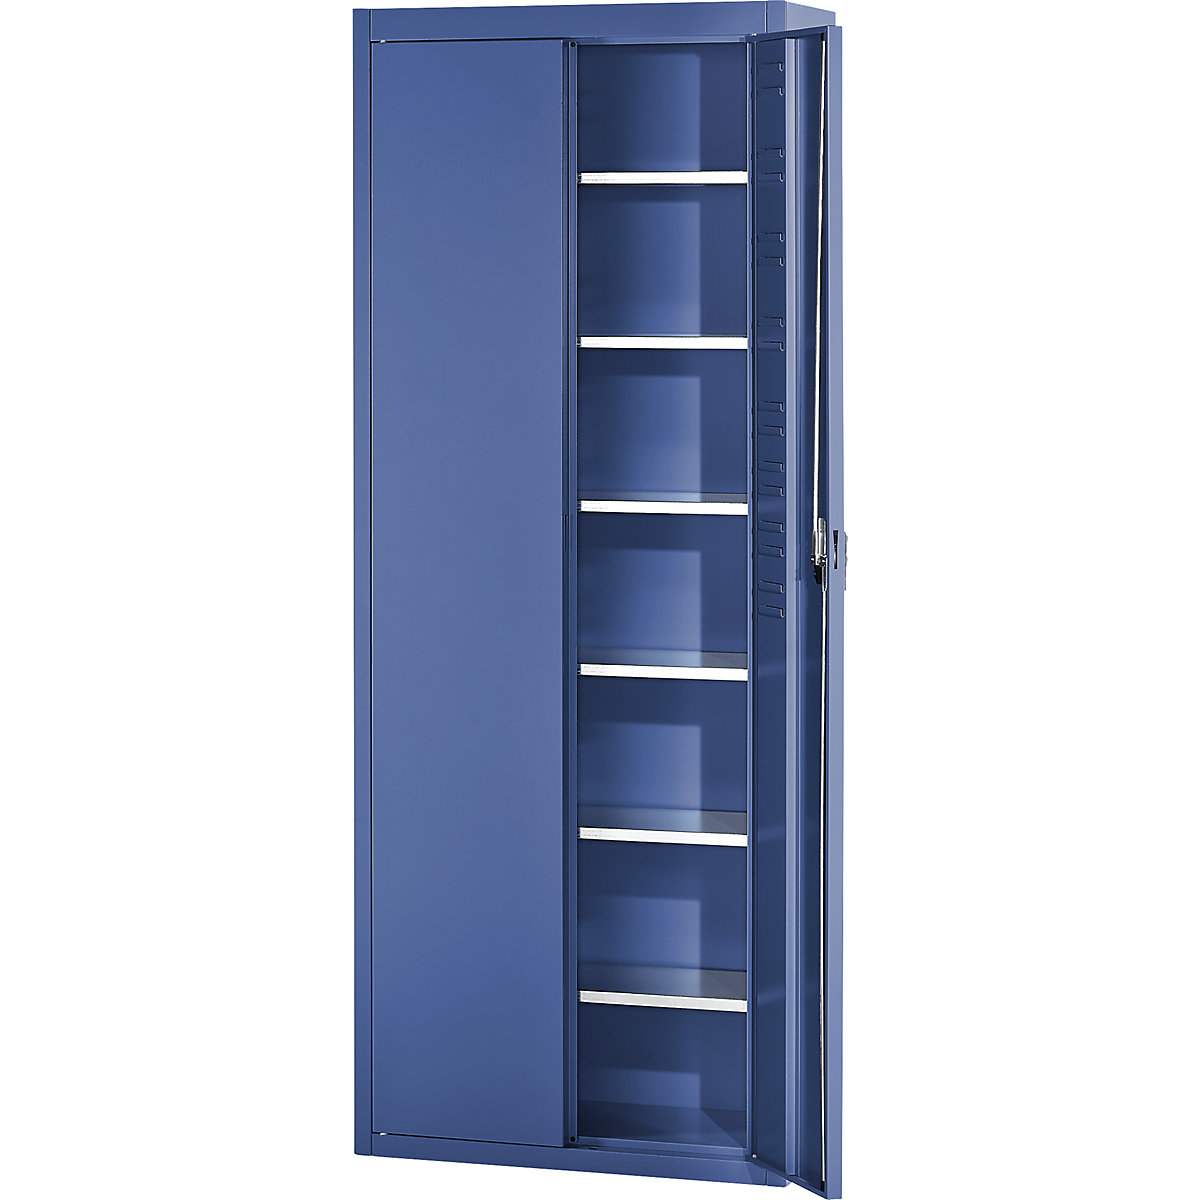 Skladiščna omara, brez odprtih skladiščnih posod – mauser, VxŠxG 2150 x 680 x 280 mm, ena barva, modra-1